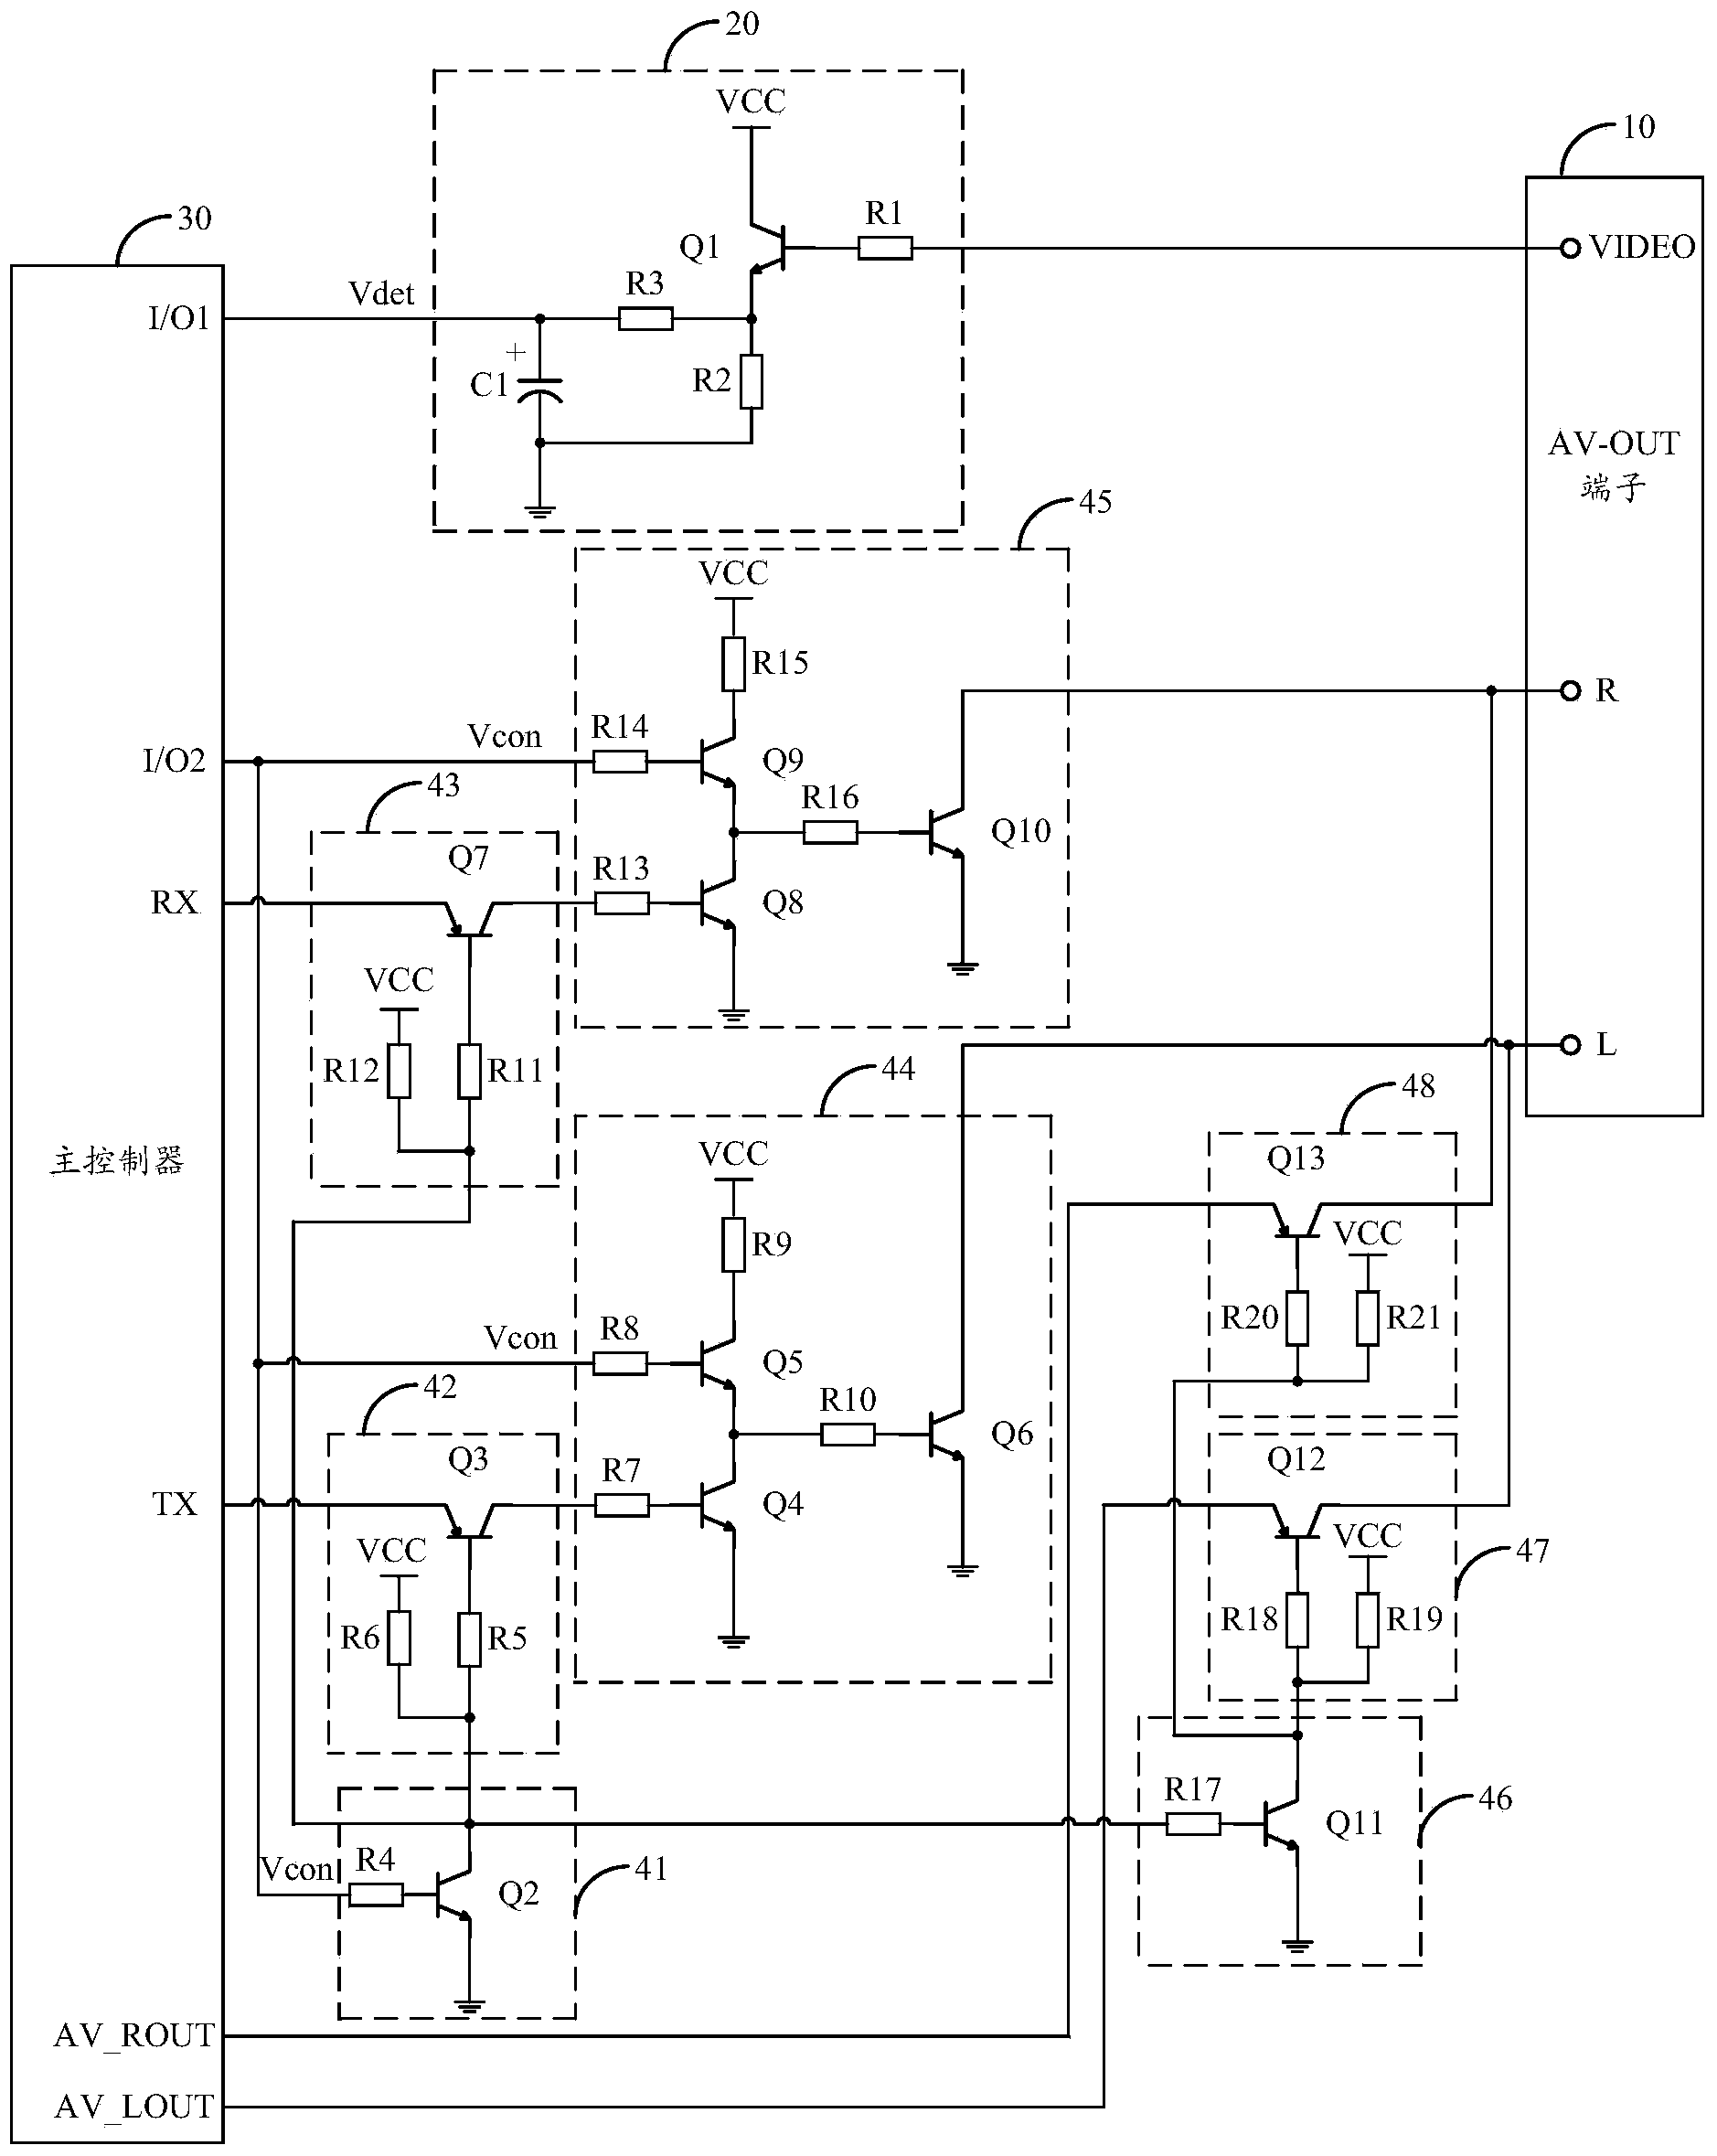 Terminal multiplex circuit and multimedia terminal equipment